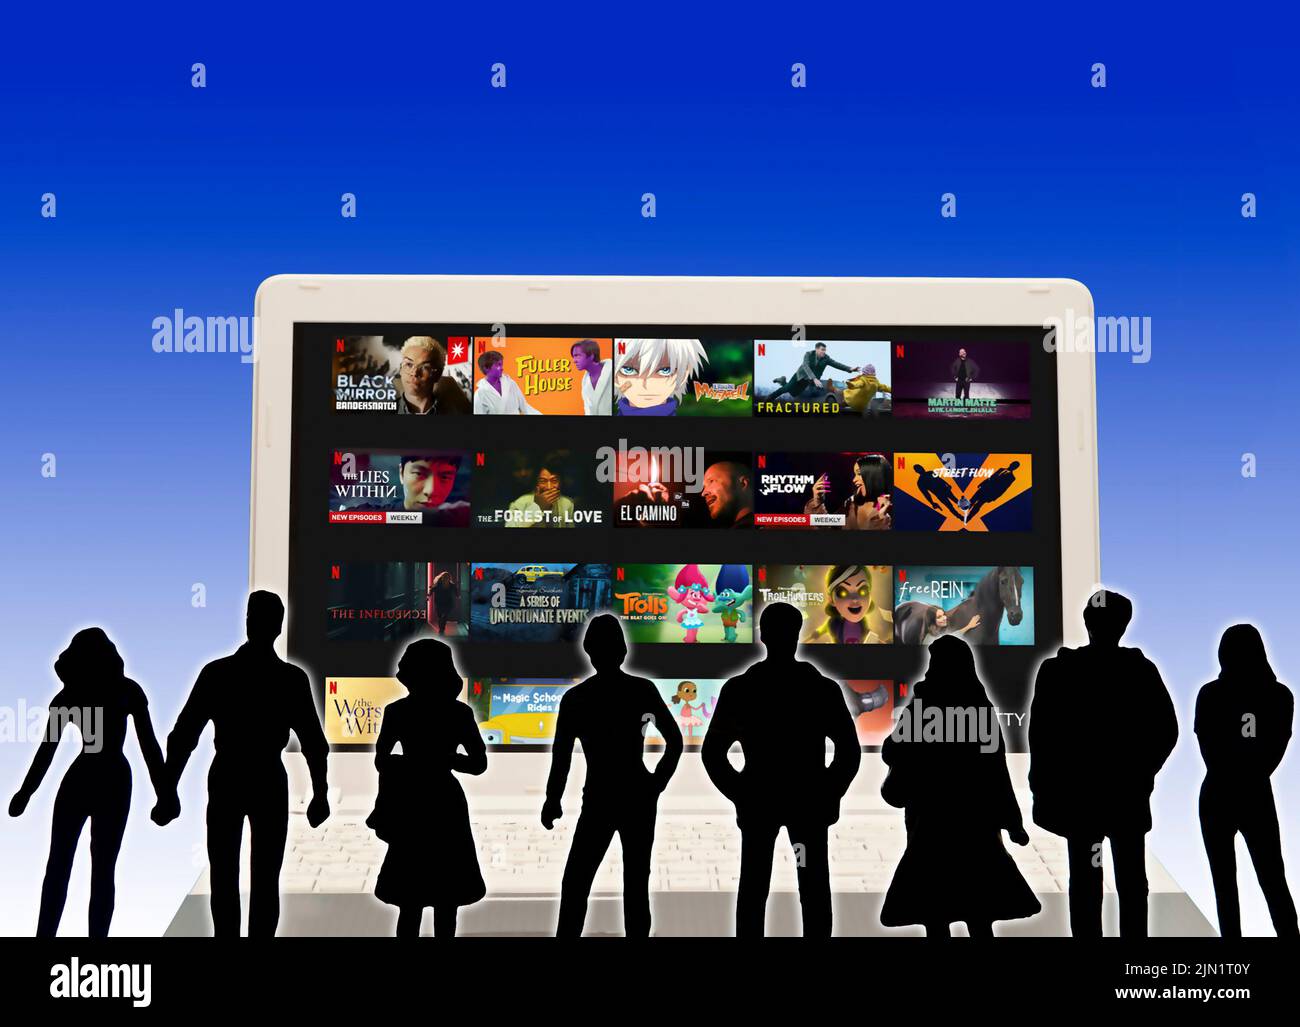 Netflix en una pantalla de portátil con siluetas de personas que lo ven Foto de stock